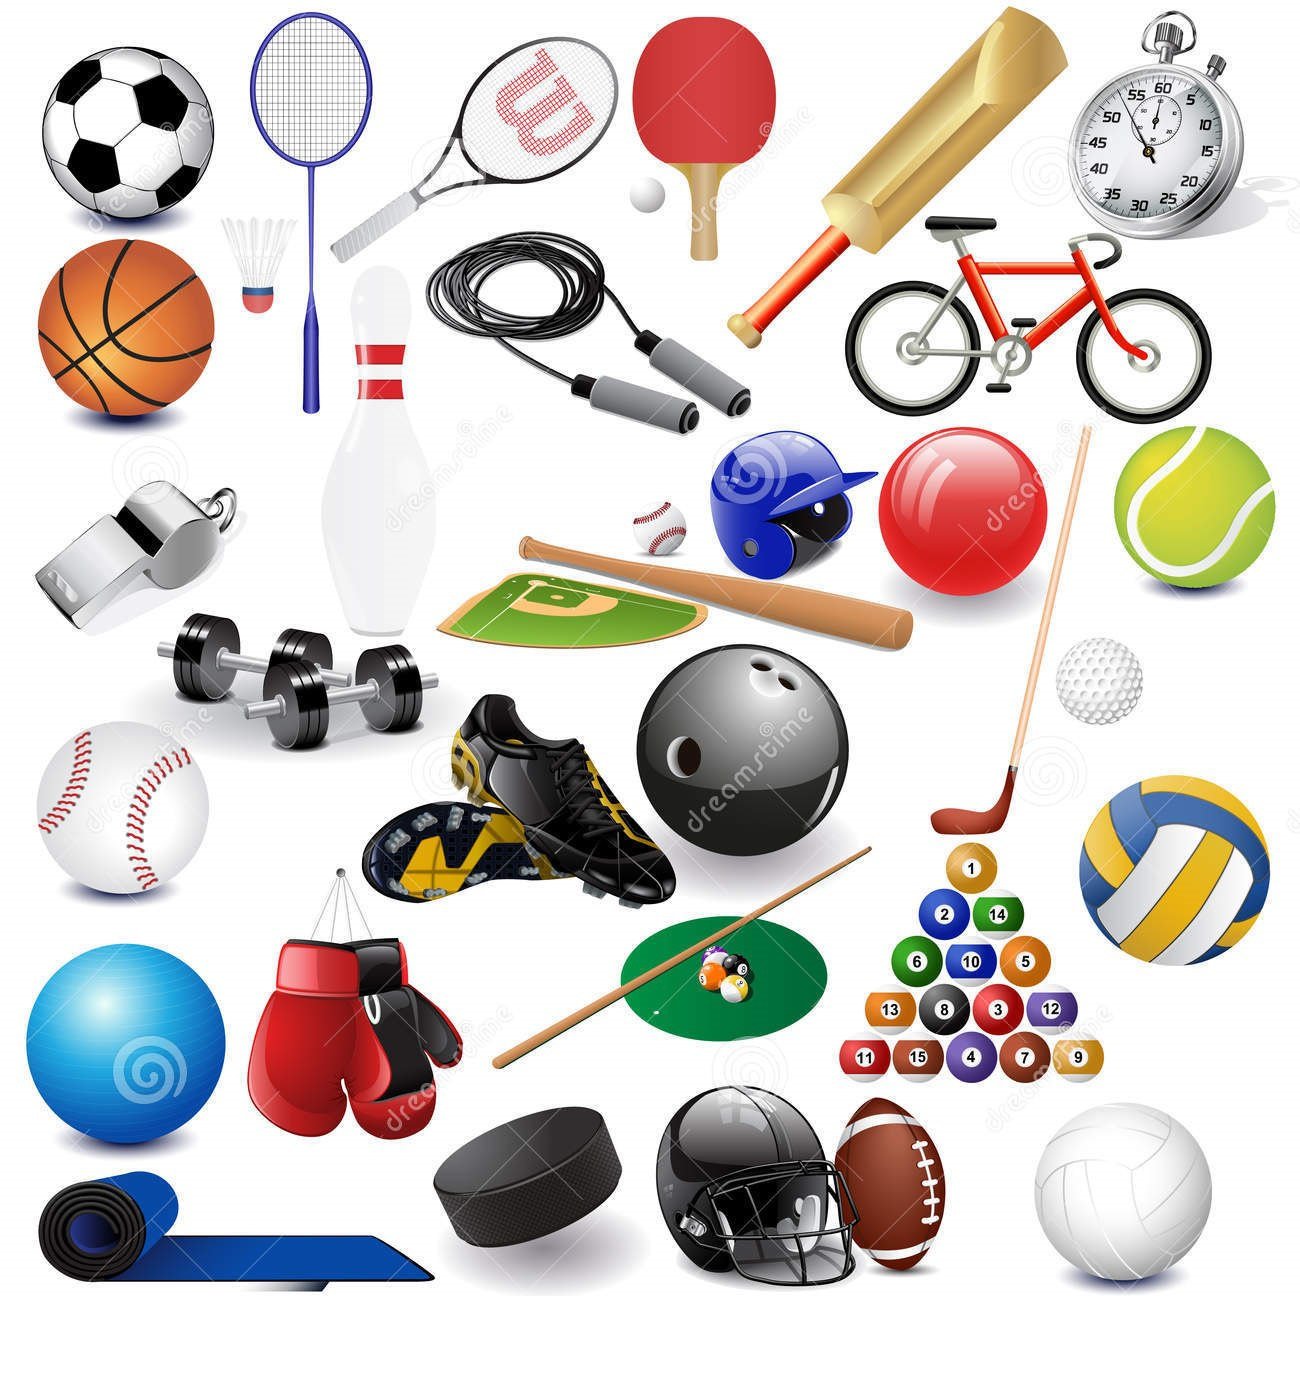 Sports items. Спортивный инвентарь. Спортивные предметы. Спортивные атрибуты. Инвентарь для спортивных игр.